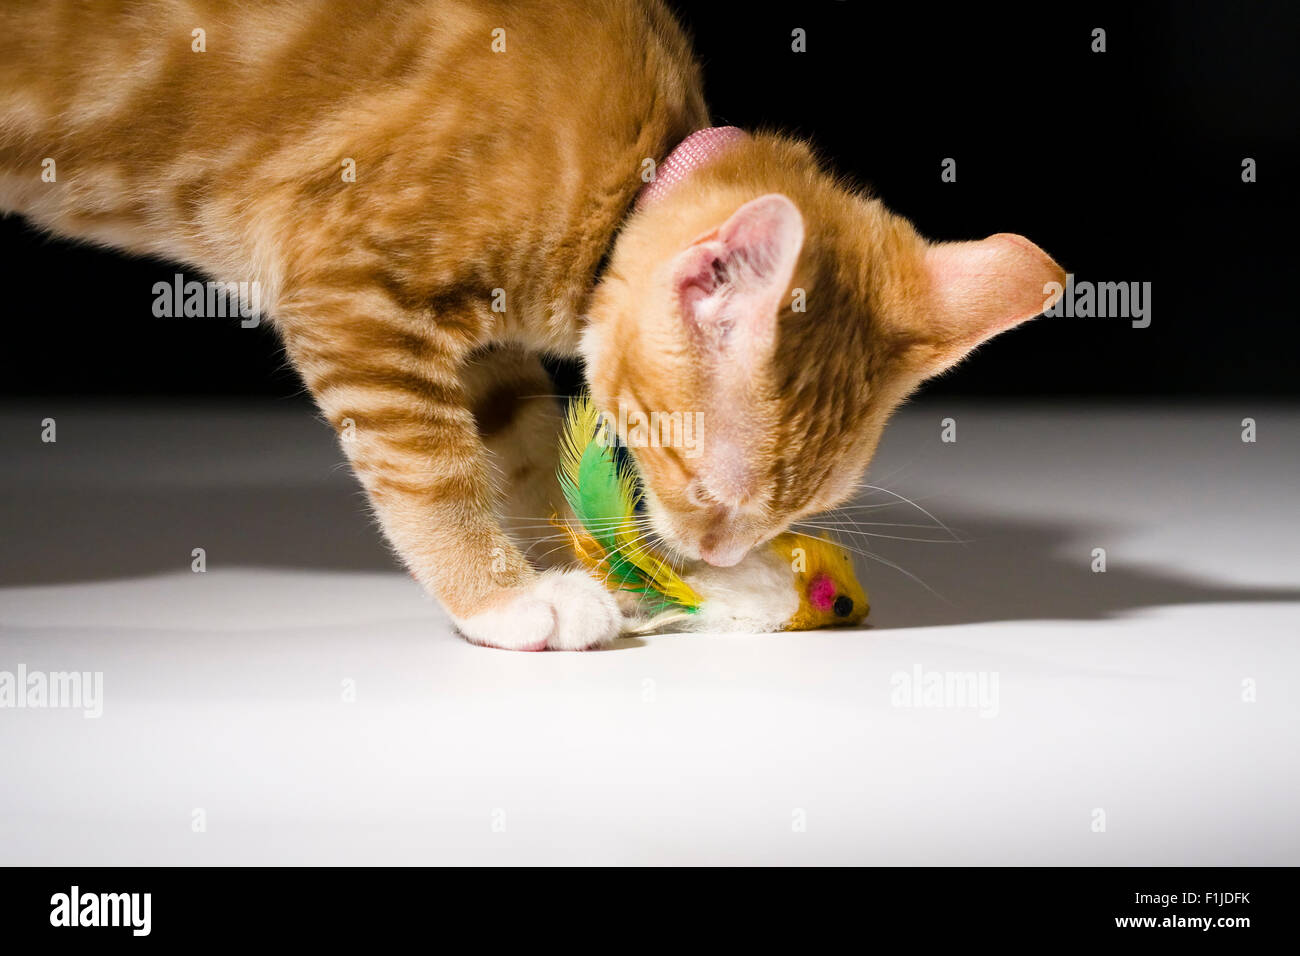 American Shorthair gato atigrado naranja jugando con un ratón de juguete Foto de stock